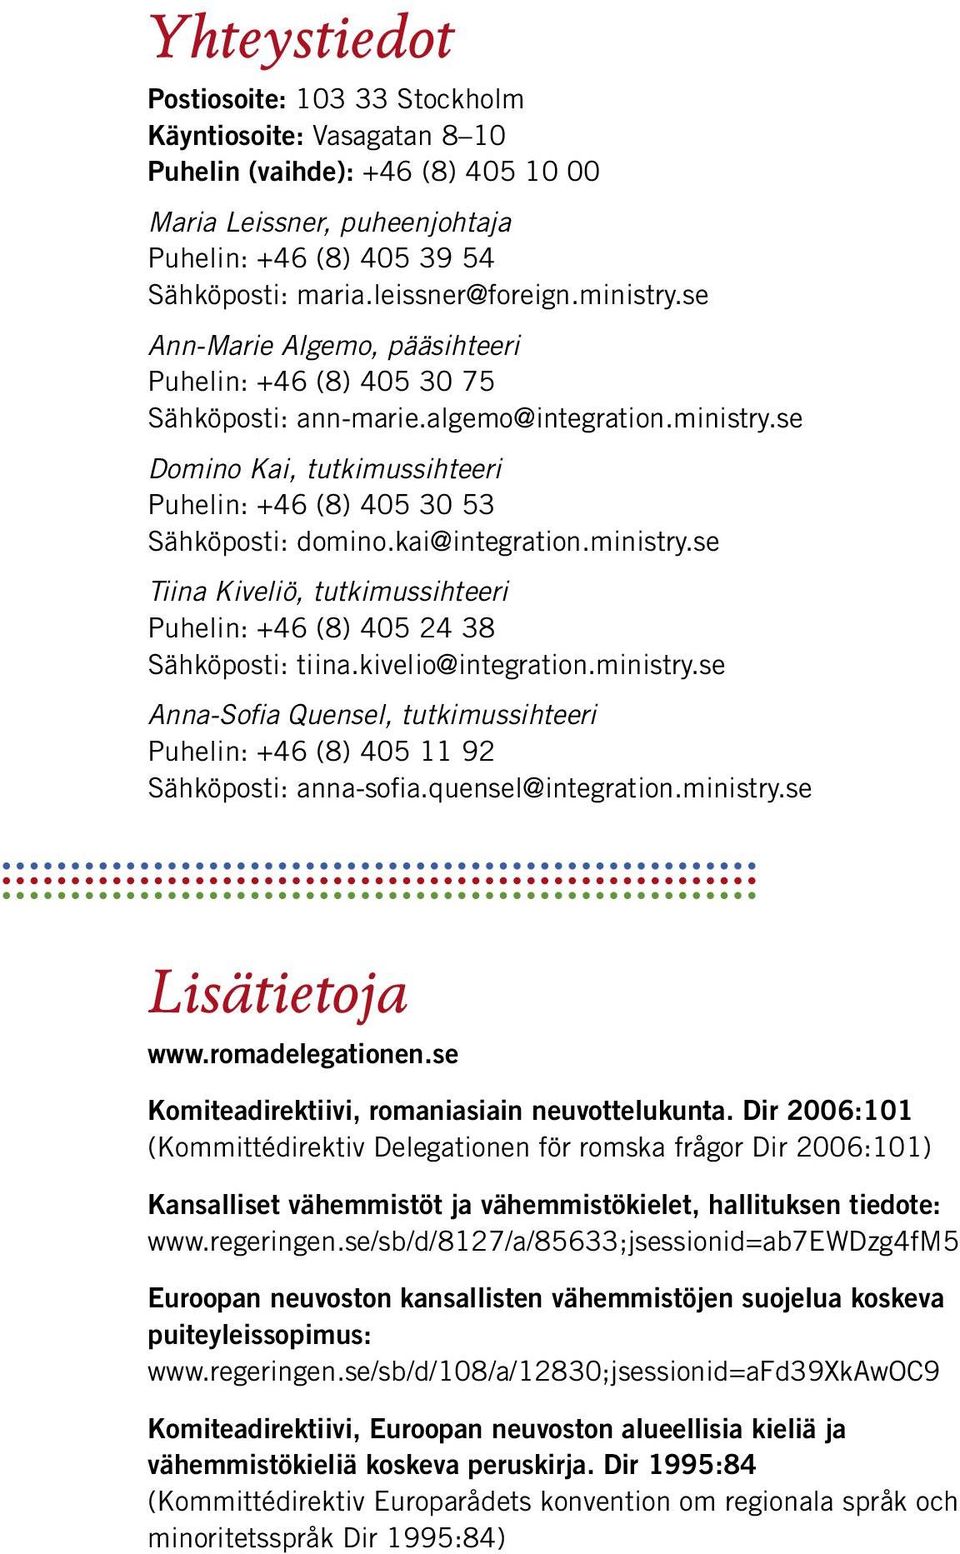 kai@integration.ministry.se Tiina Kiveliö, tutkimussihteeri Puhelin: +46 (8) 405 24 38 Sähköposti: tiina.kivelio@integration.ministry.se Anna-Sofia Quensel, tutkimussihteeri Puhelin: +46 (8) 405 11 92 Sähköposti: anna-sofia.